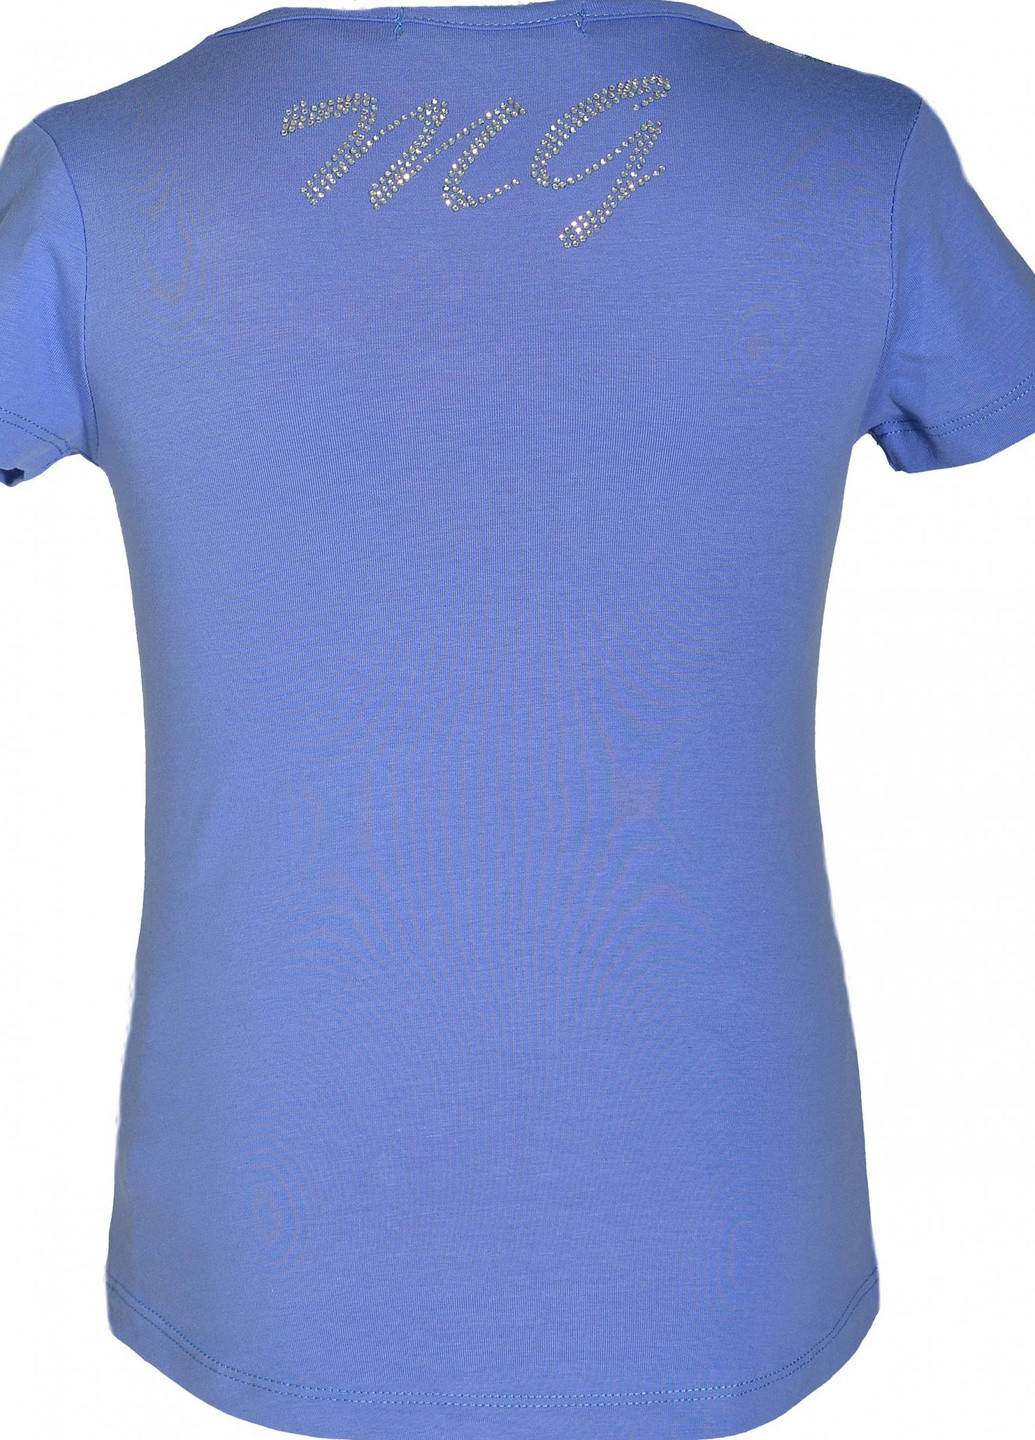 Фіолетова футболки футболка на дівчаток (101)11860-736 Lemanta